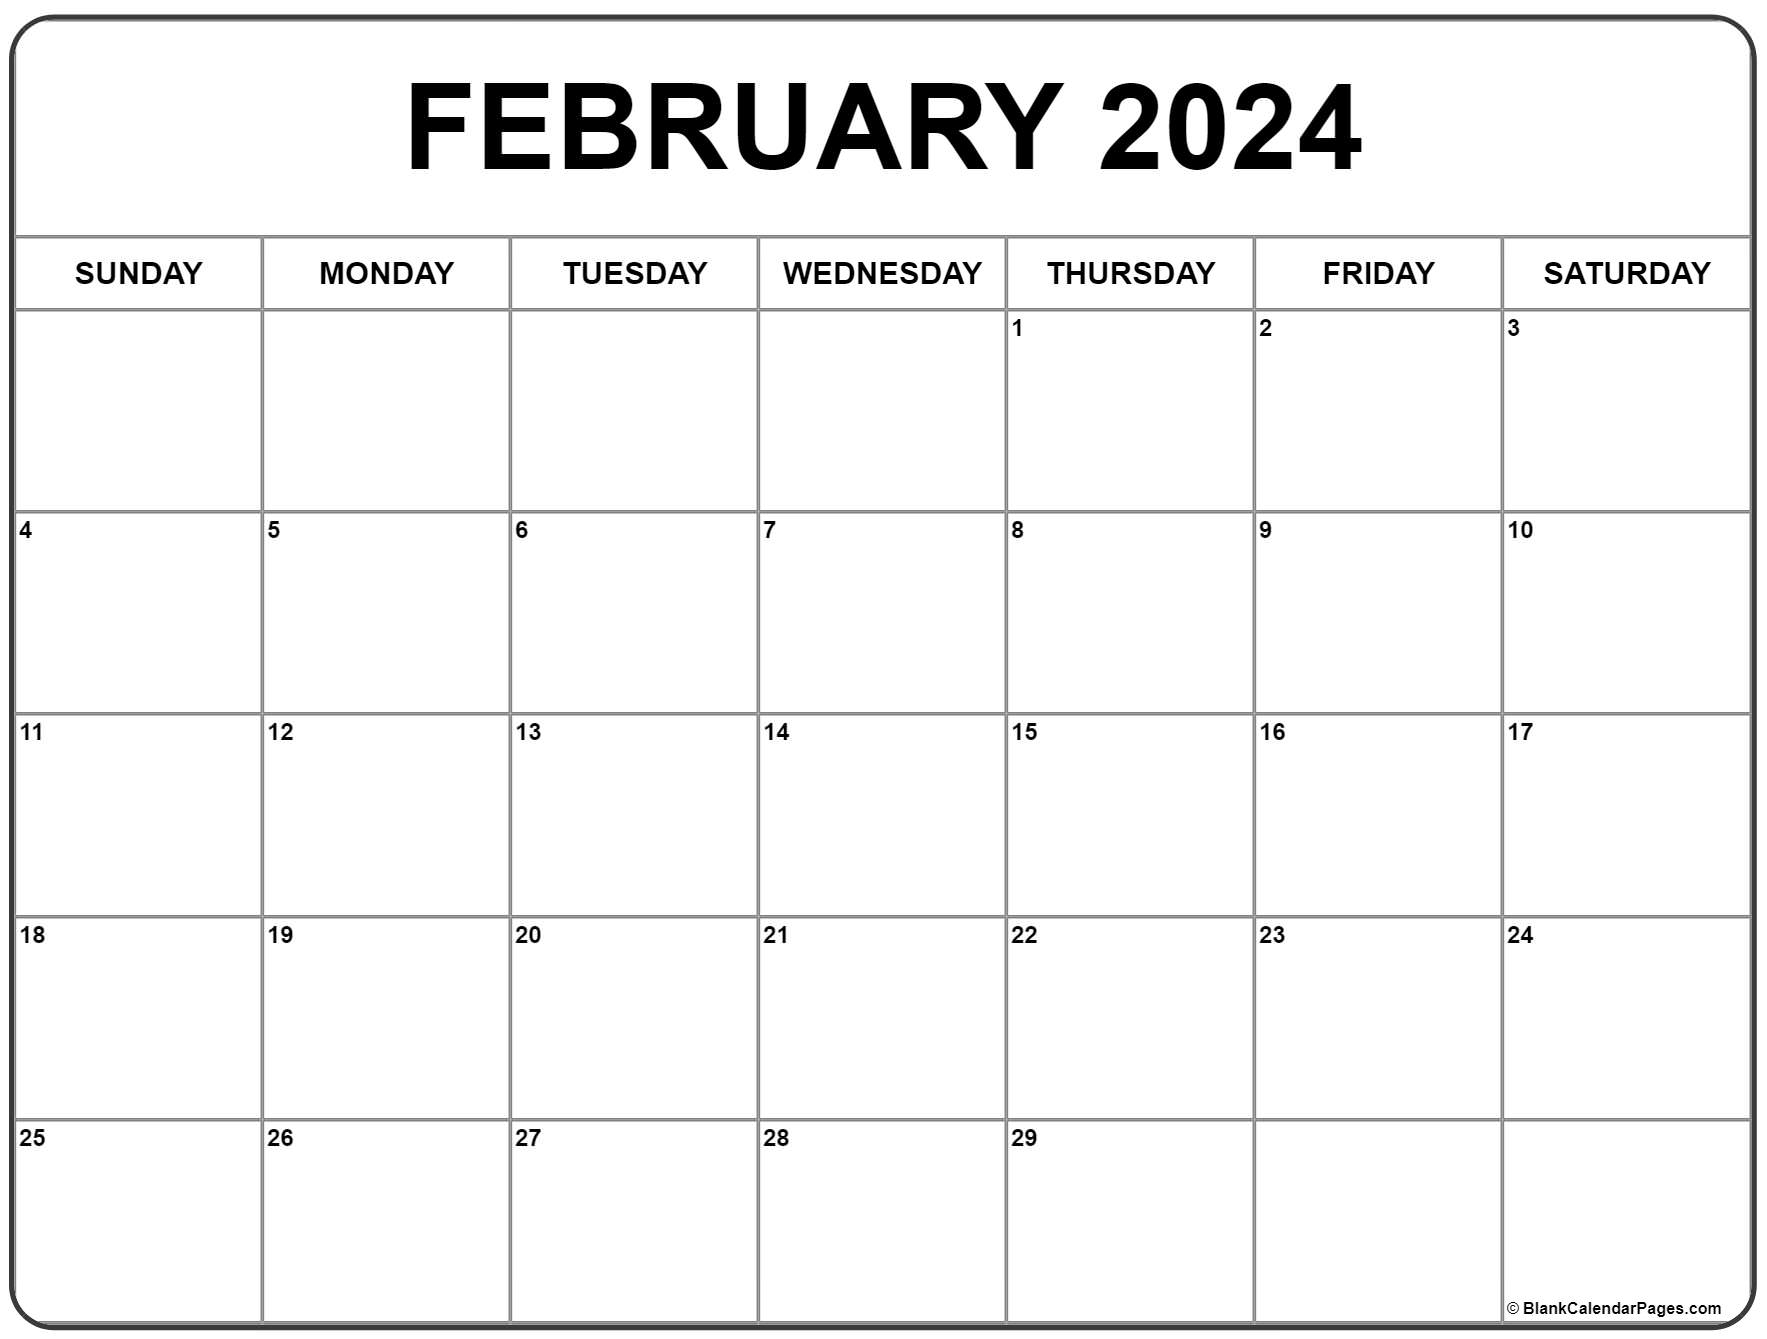 February 2024 Calendar | Free Printable Calendar for February Printable Calendar 2024 Free